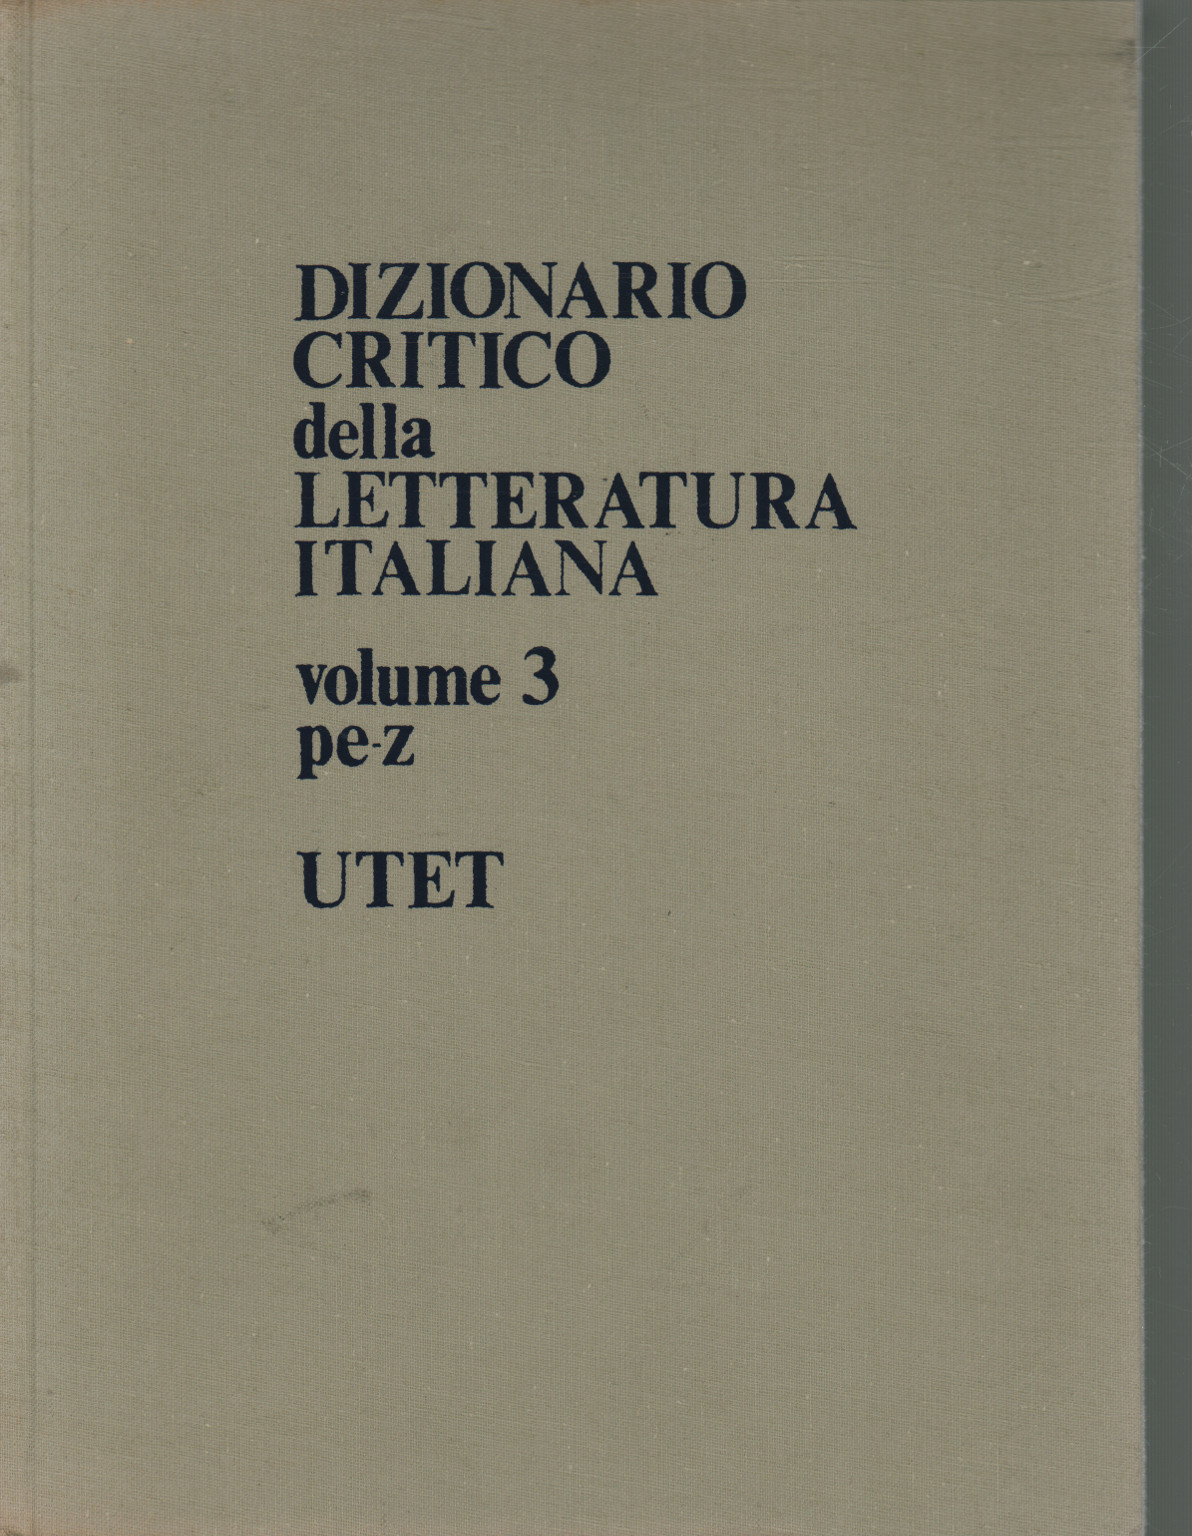 Wörterbuch der kritischen italienischen literatur. Vol, Vittore Branca